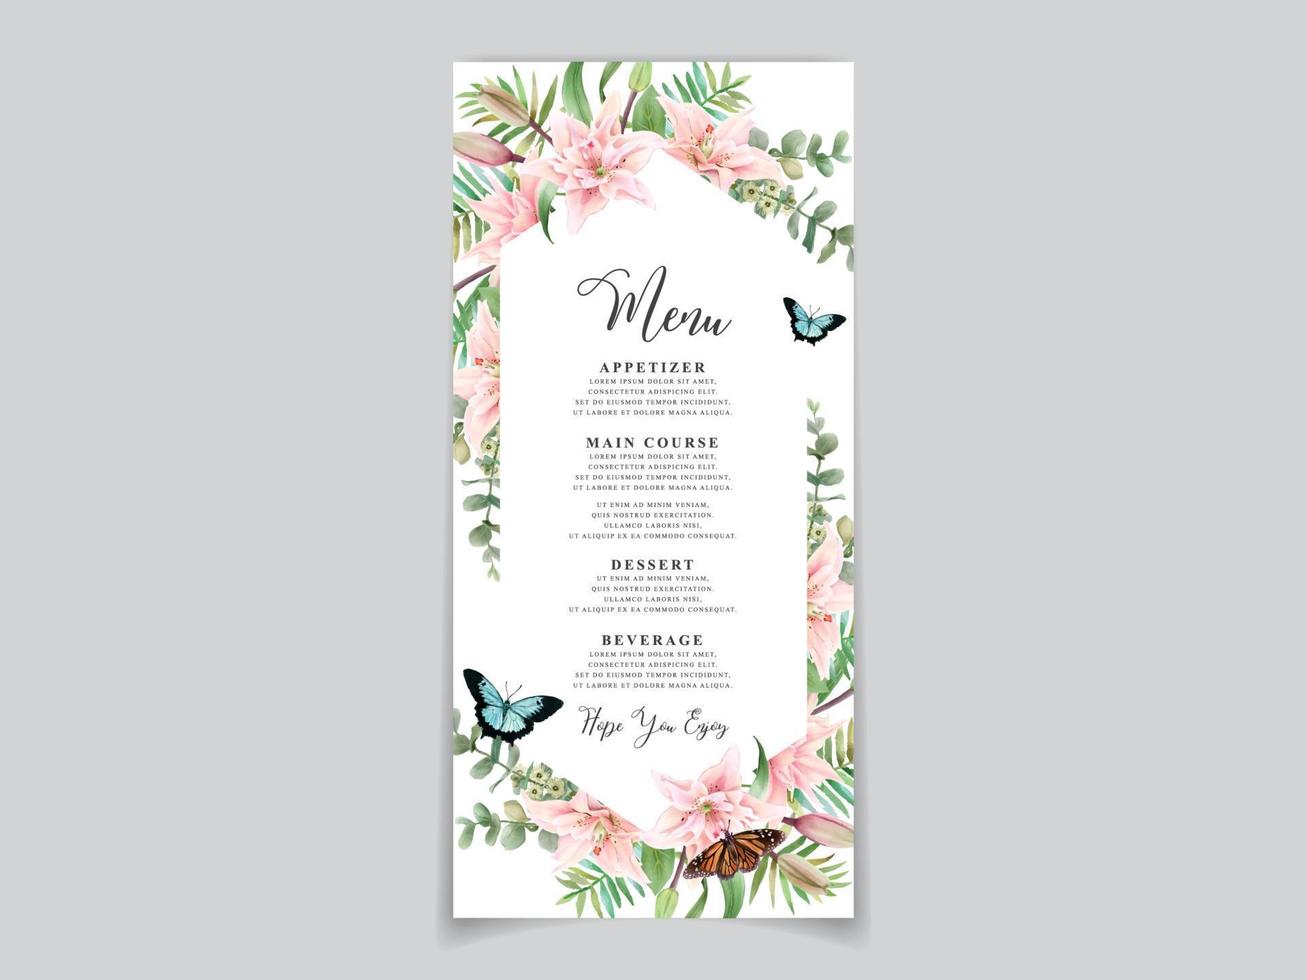 vacker blommig akvarell bröllop inbjudningskort vektor